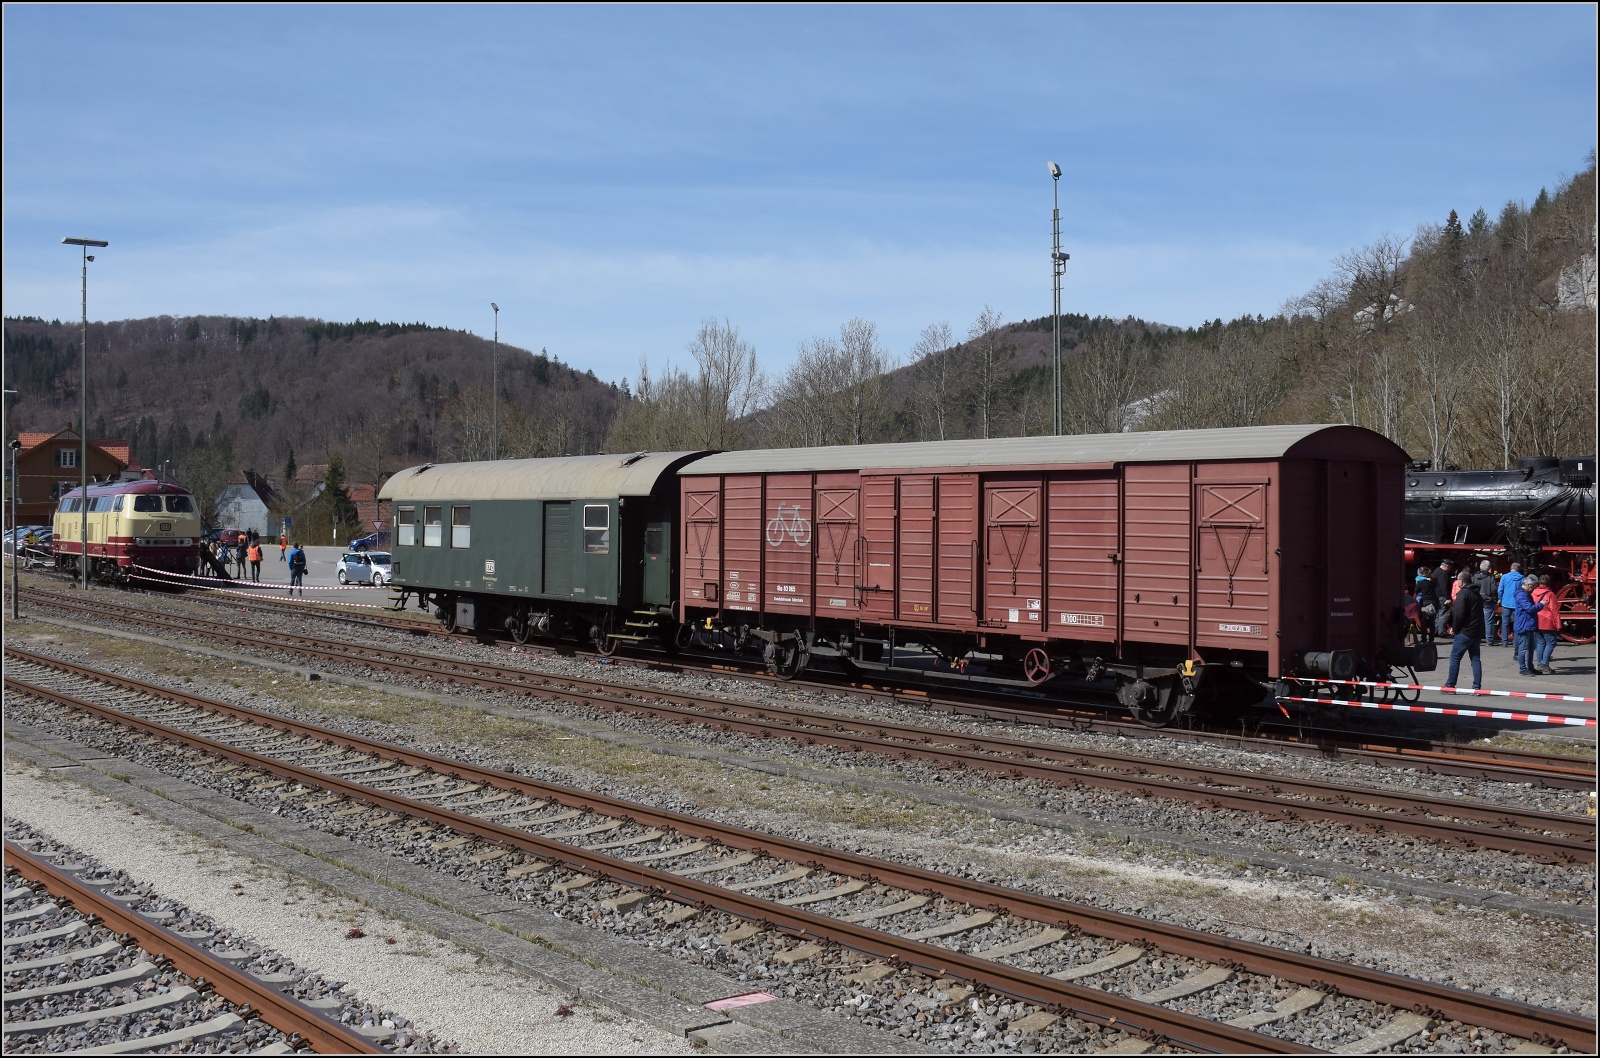 50 Jahre EFZ.

Der gedeckte Güterwagen Gbs 83 065 der EFZ ist offenbar heute für Fahrradtransport vorgesehen. Seine NVR-Nummer lautet 49 80 1200 244-6 D-NESA. Storzingen, April 2023.